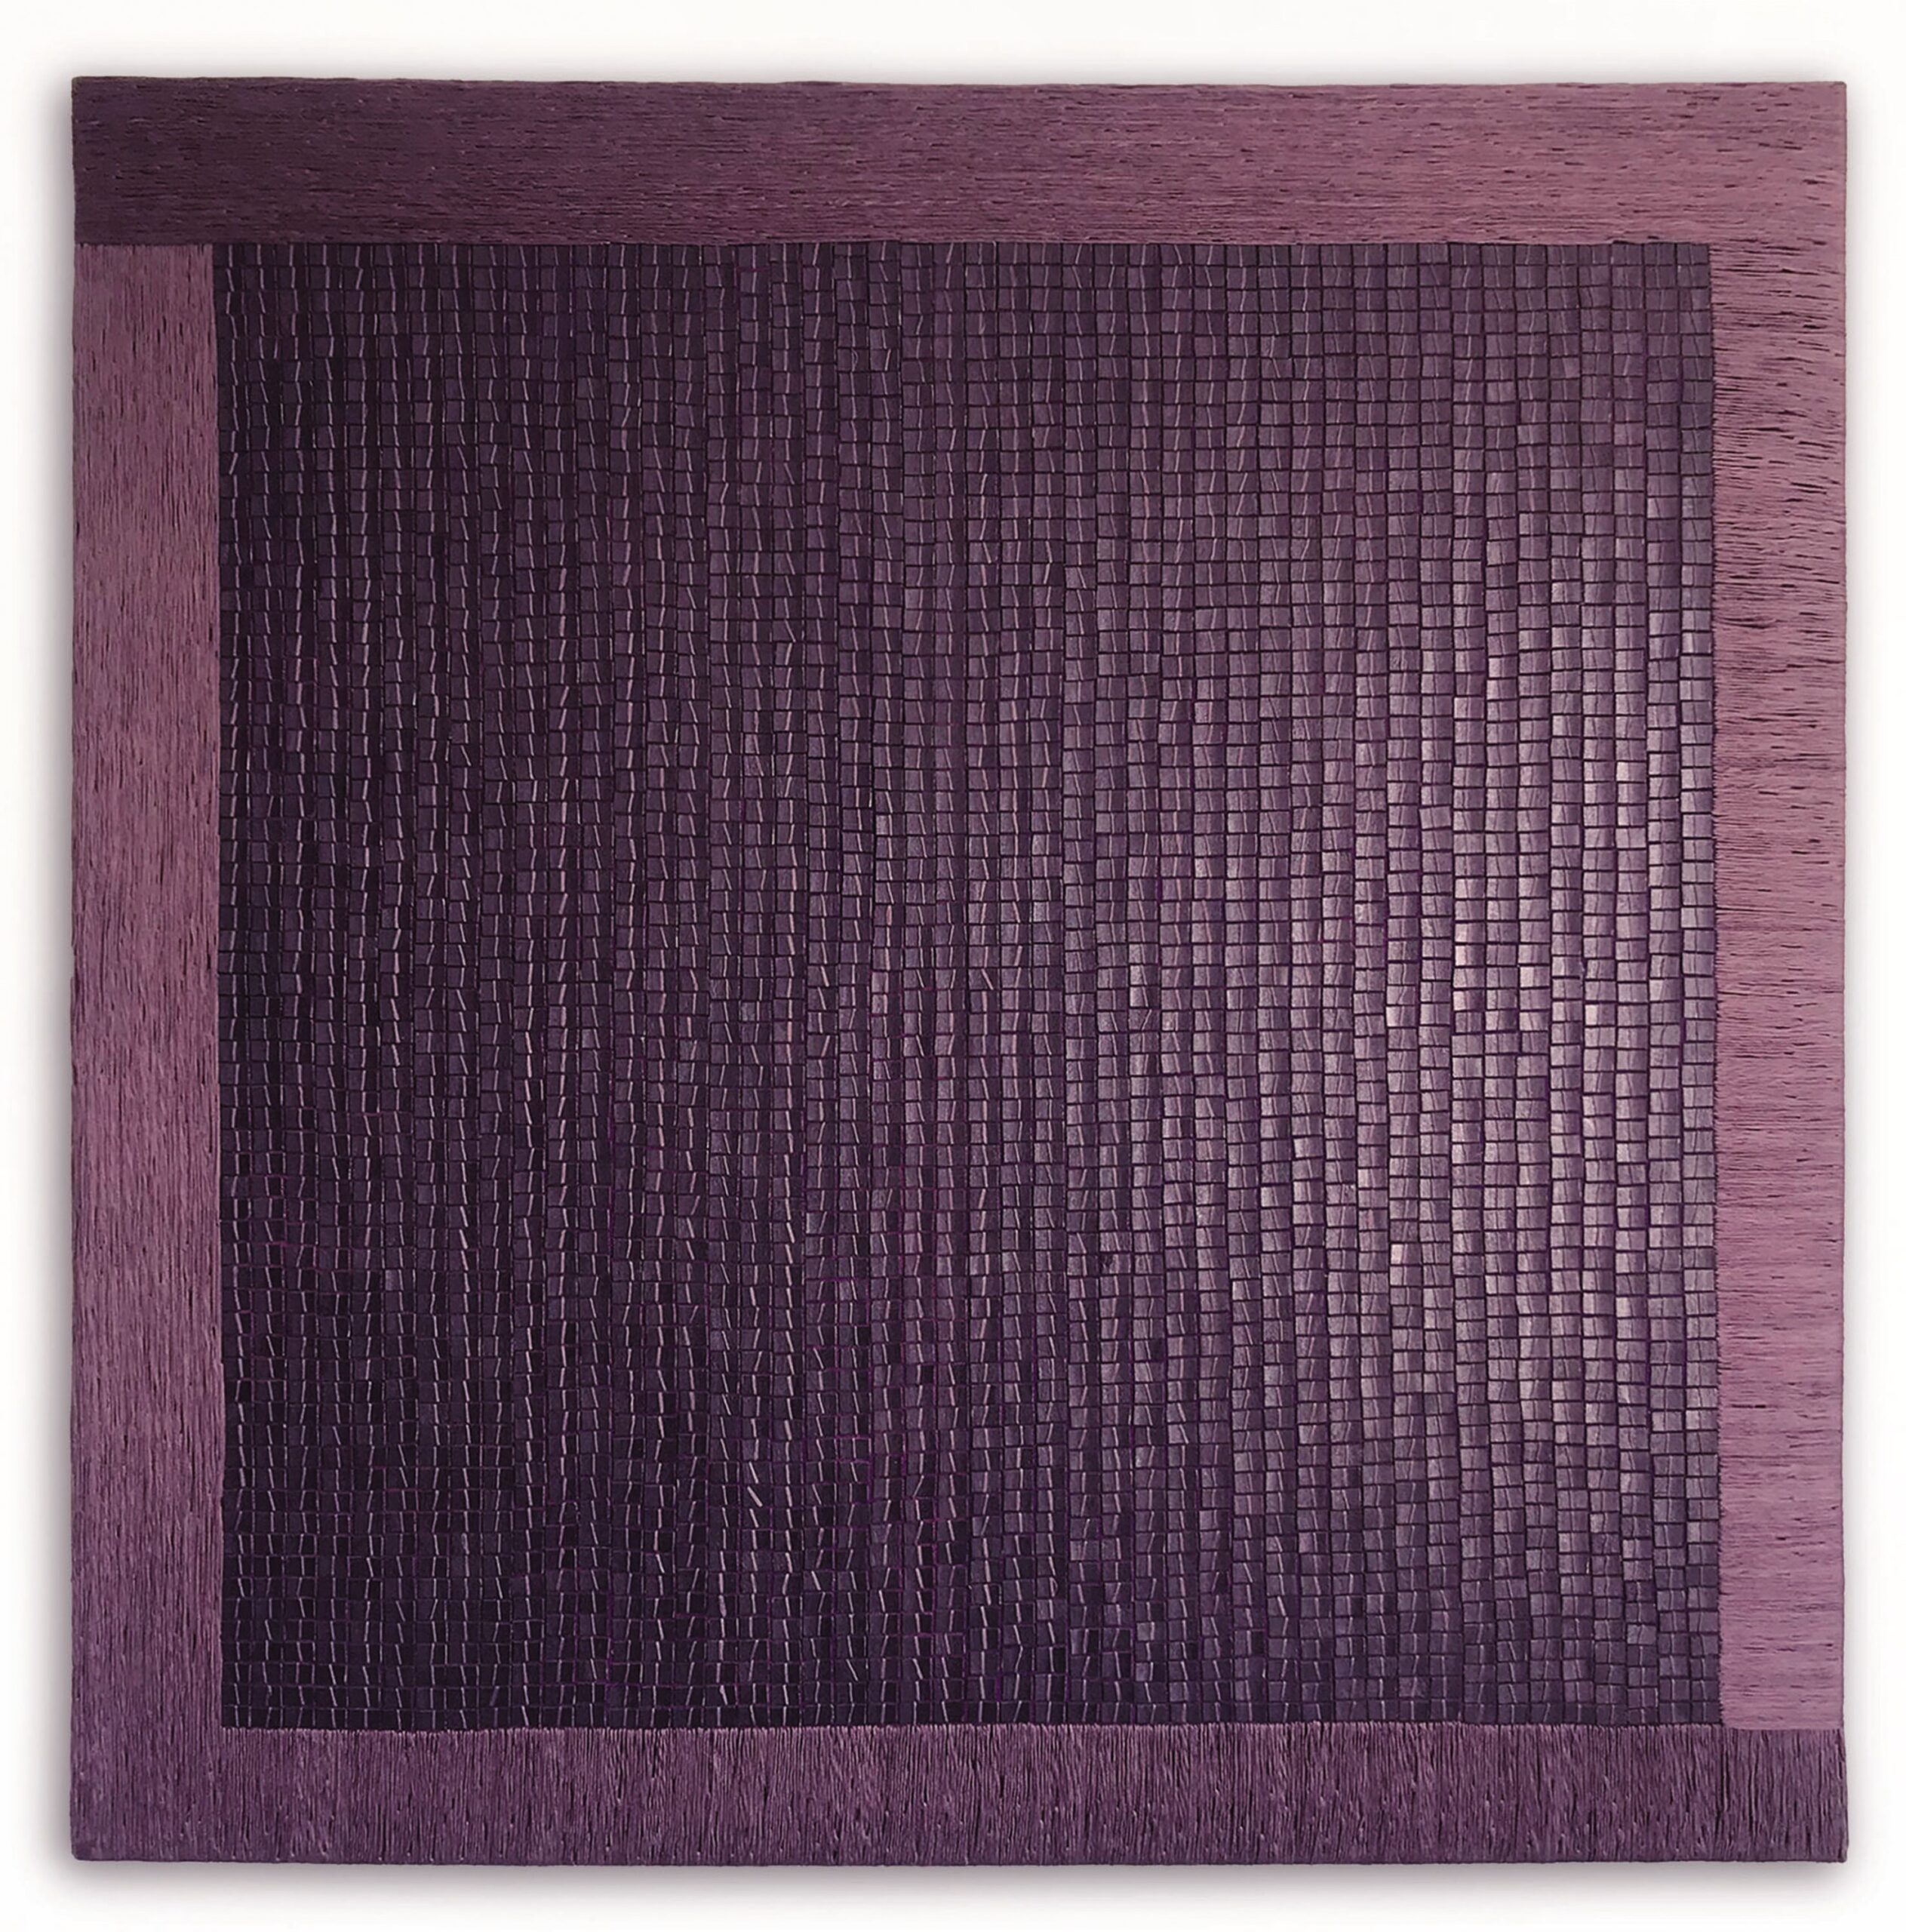 Na zdjęciu pracy Izabeli Walczak widać fioletowy kwadrat i fioletowe ramy. Każda część pracy ma delikatne, rozproszone i fragmentaryczne światło. Kwadrat składa się z mnóstwa małych prostokątów, które mają różną jasność. 